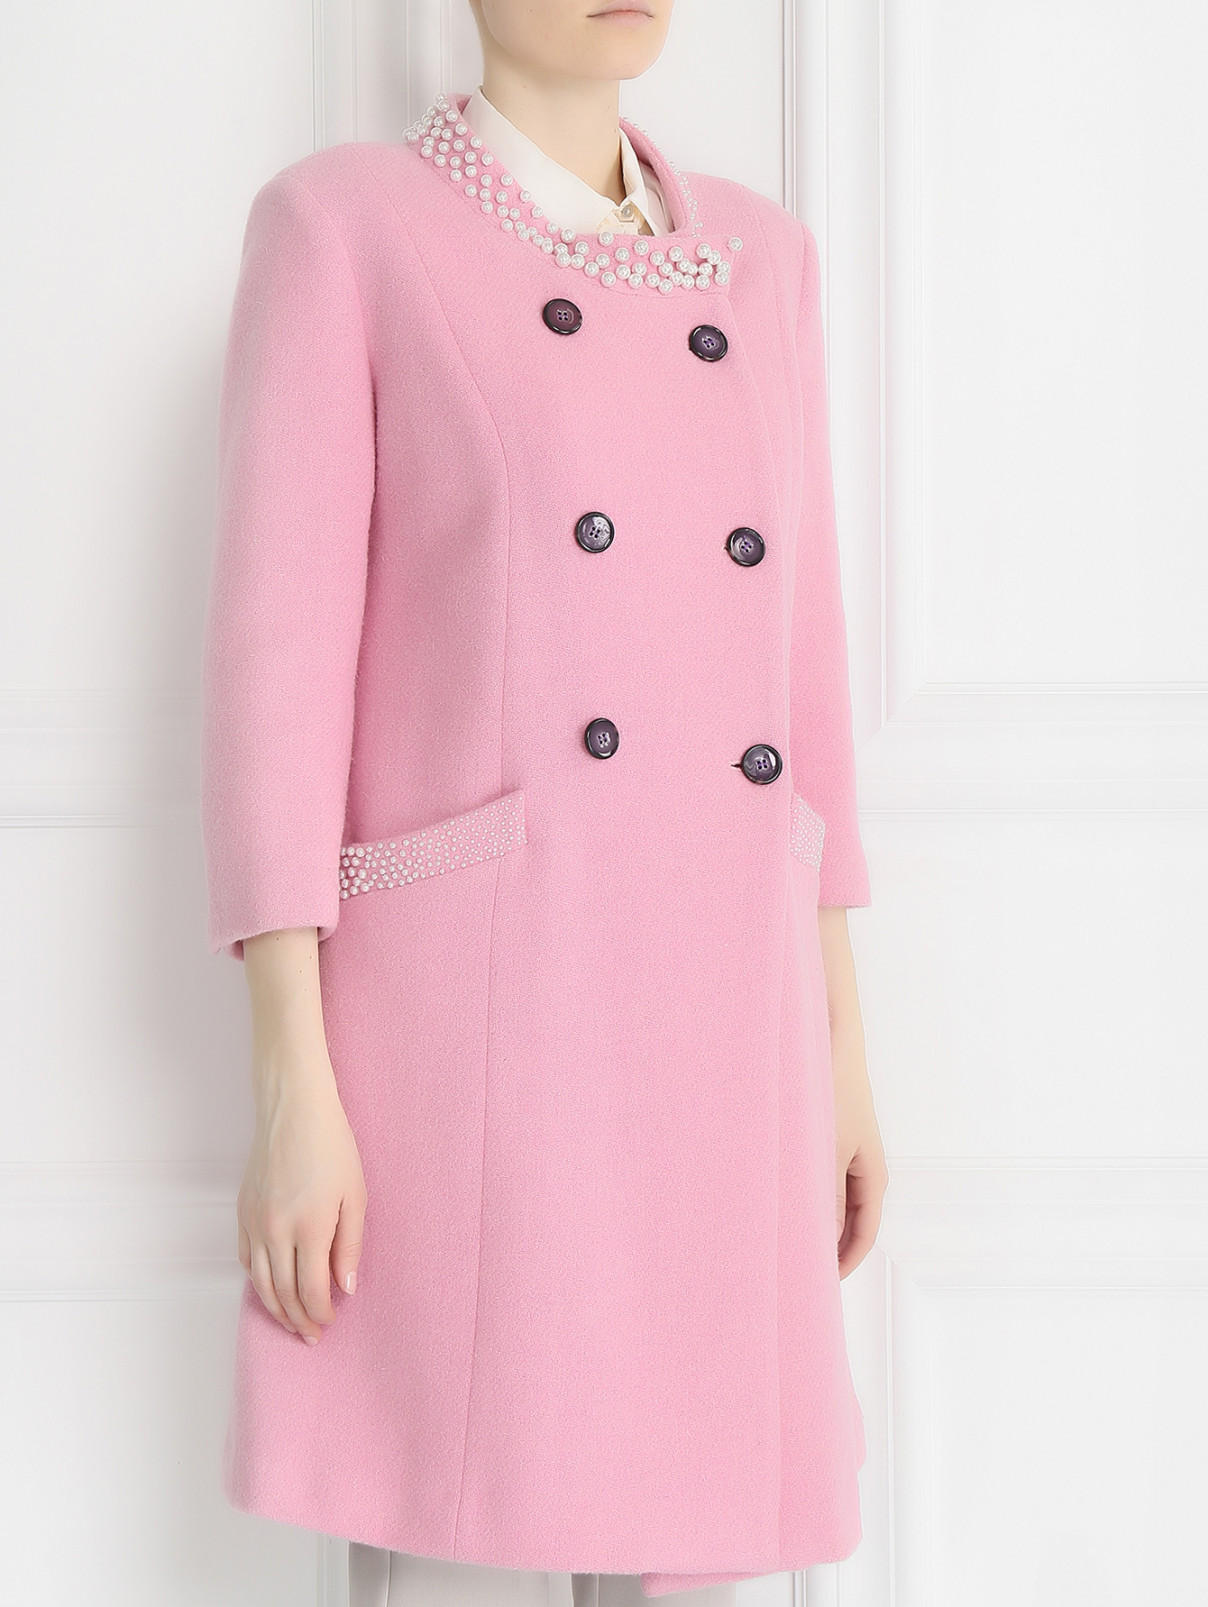 Пальто из шерсти с аппликаций из бусин Femme by Michele R.  –  Модель Верх-Низ  – Цвет:  Розовый